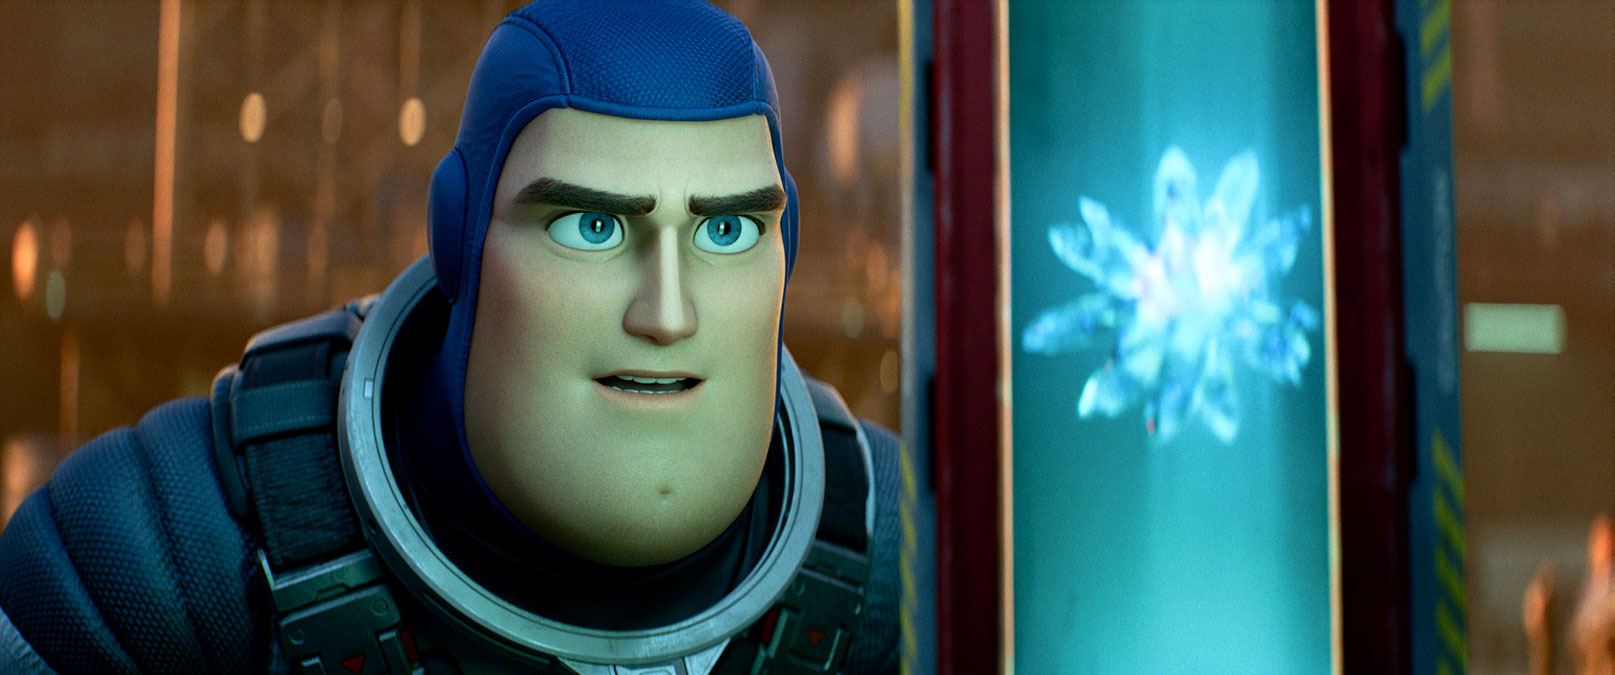 Algunos cines advirtieron que película de Buzz Lightyear 'contiene ideología de género'